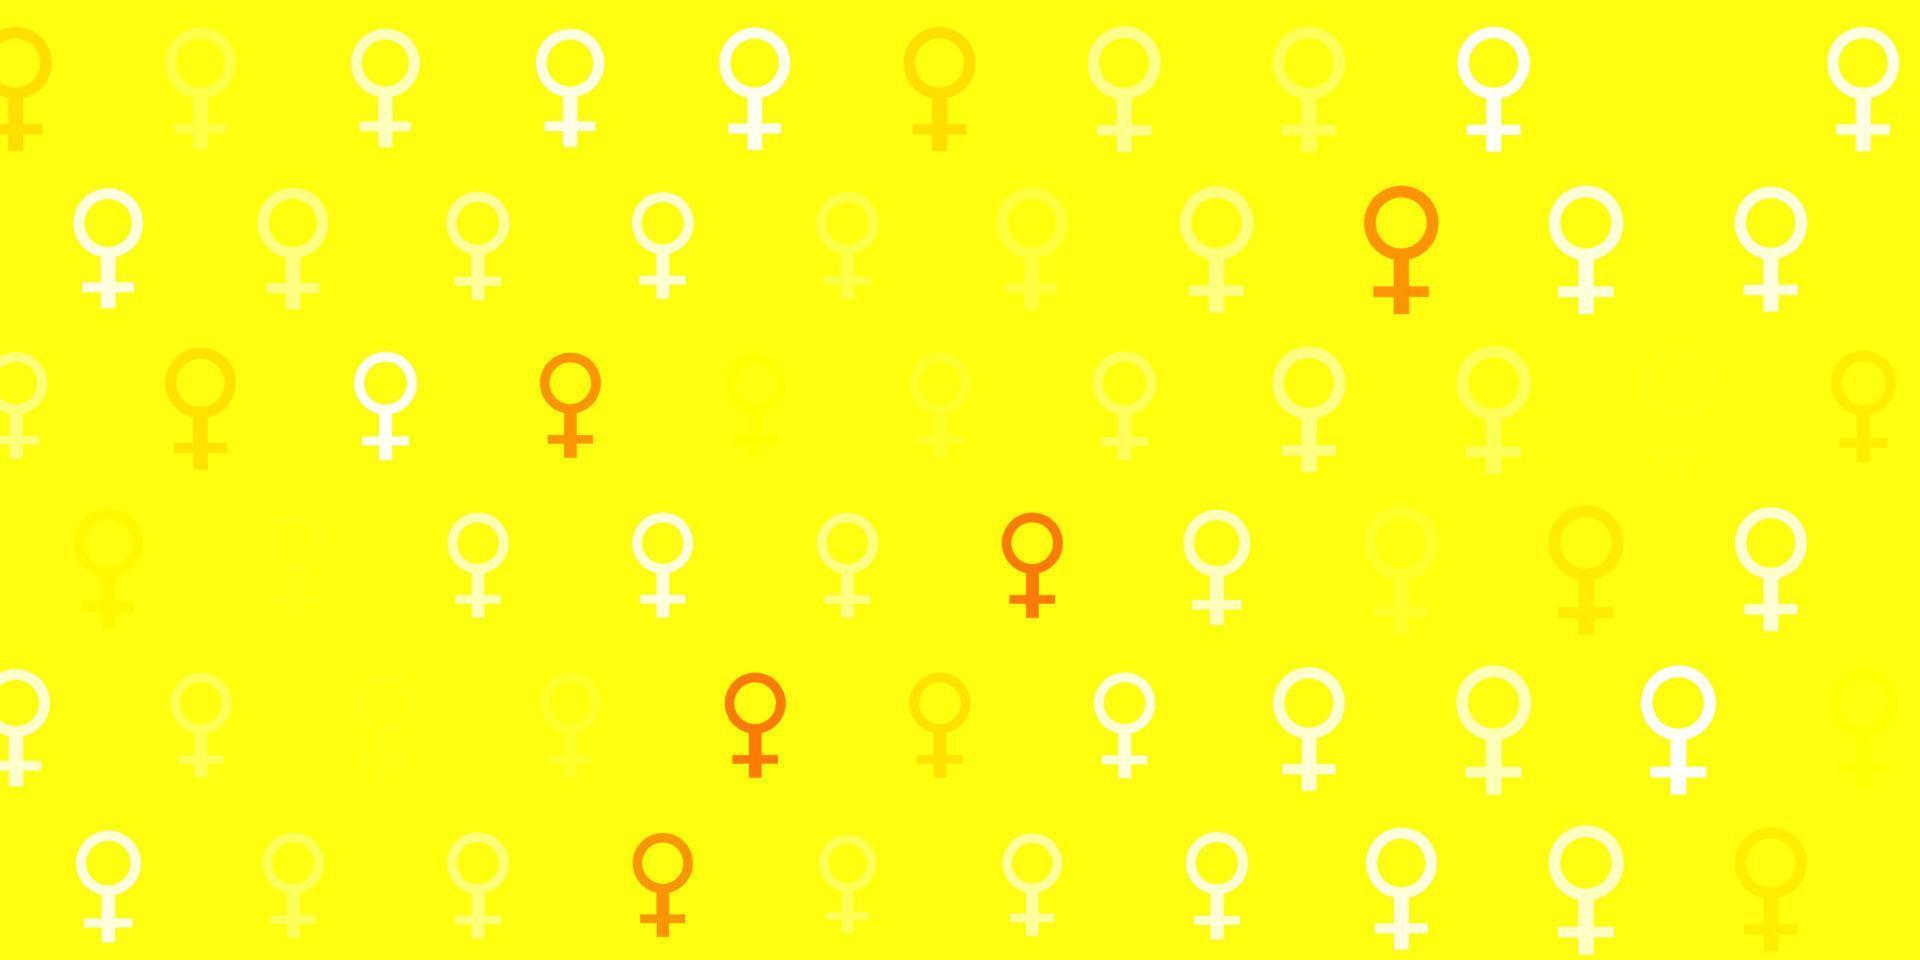 ljusröd, gul vektor bakgrund med kvinnor makt symboler.